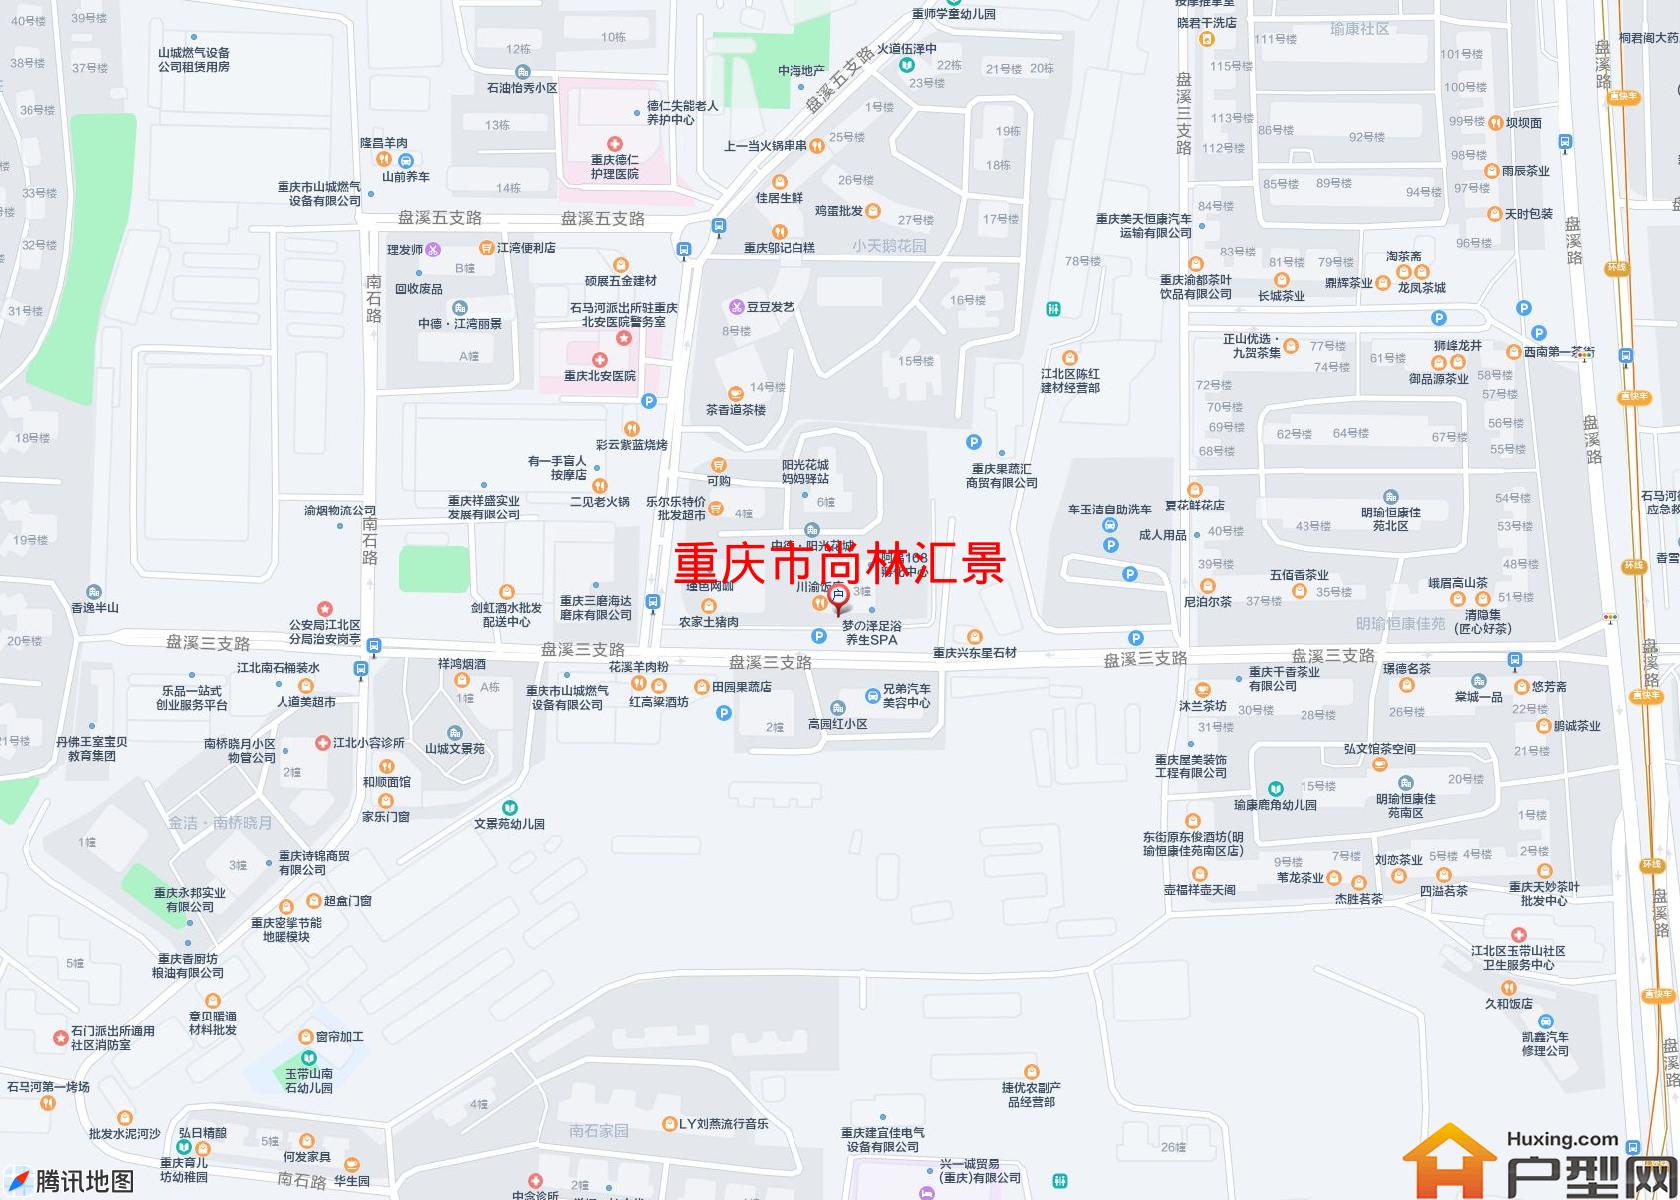 尚林汇景小区 - 户型网